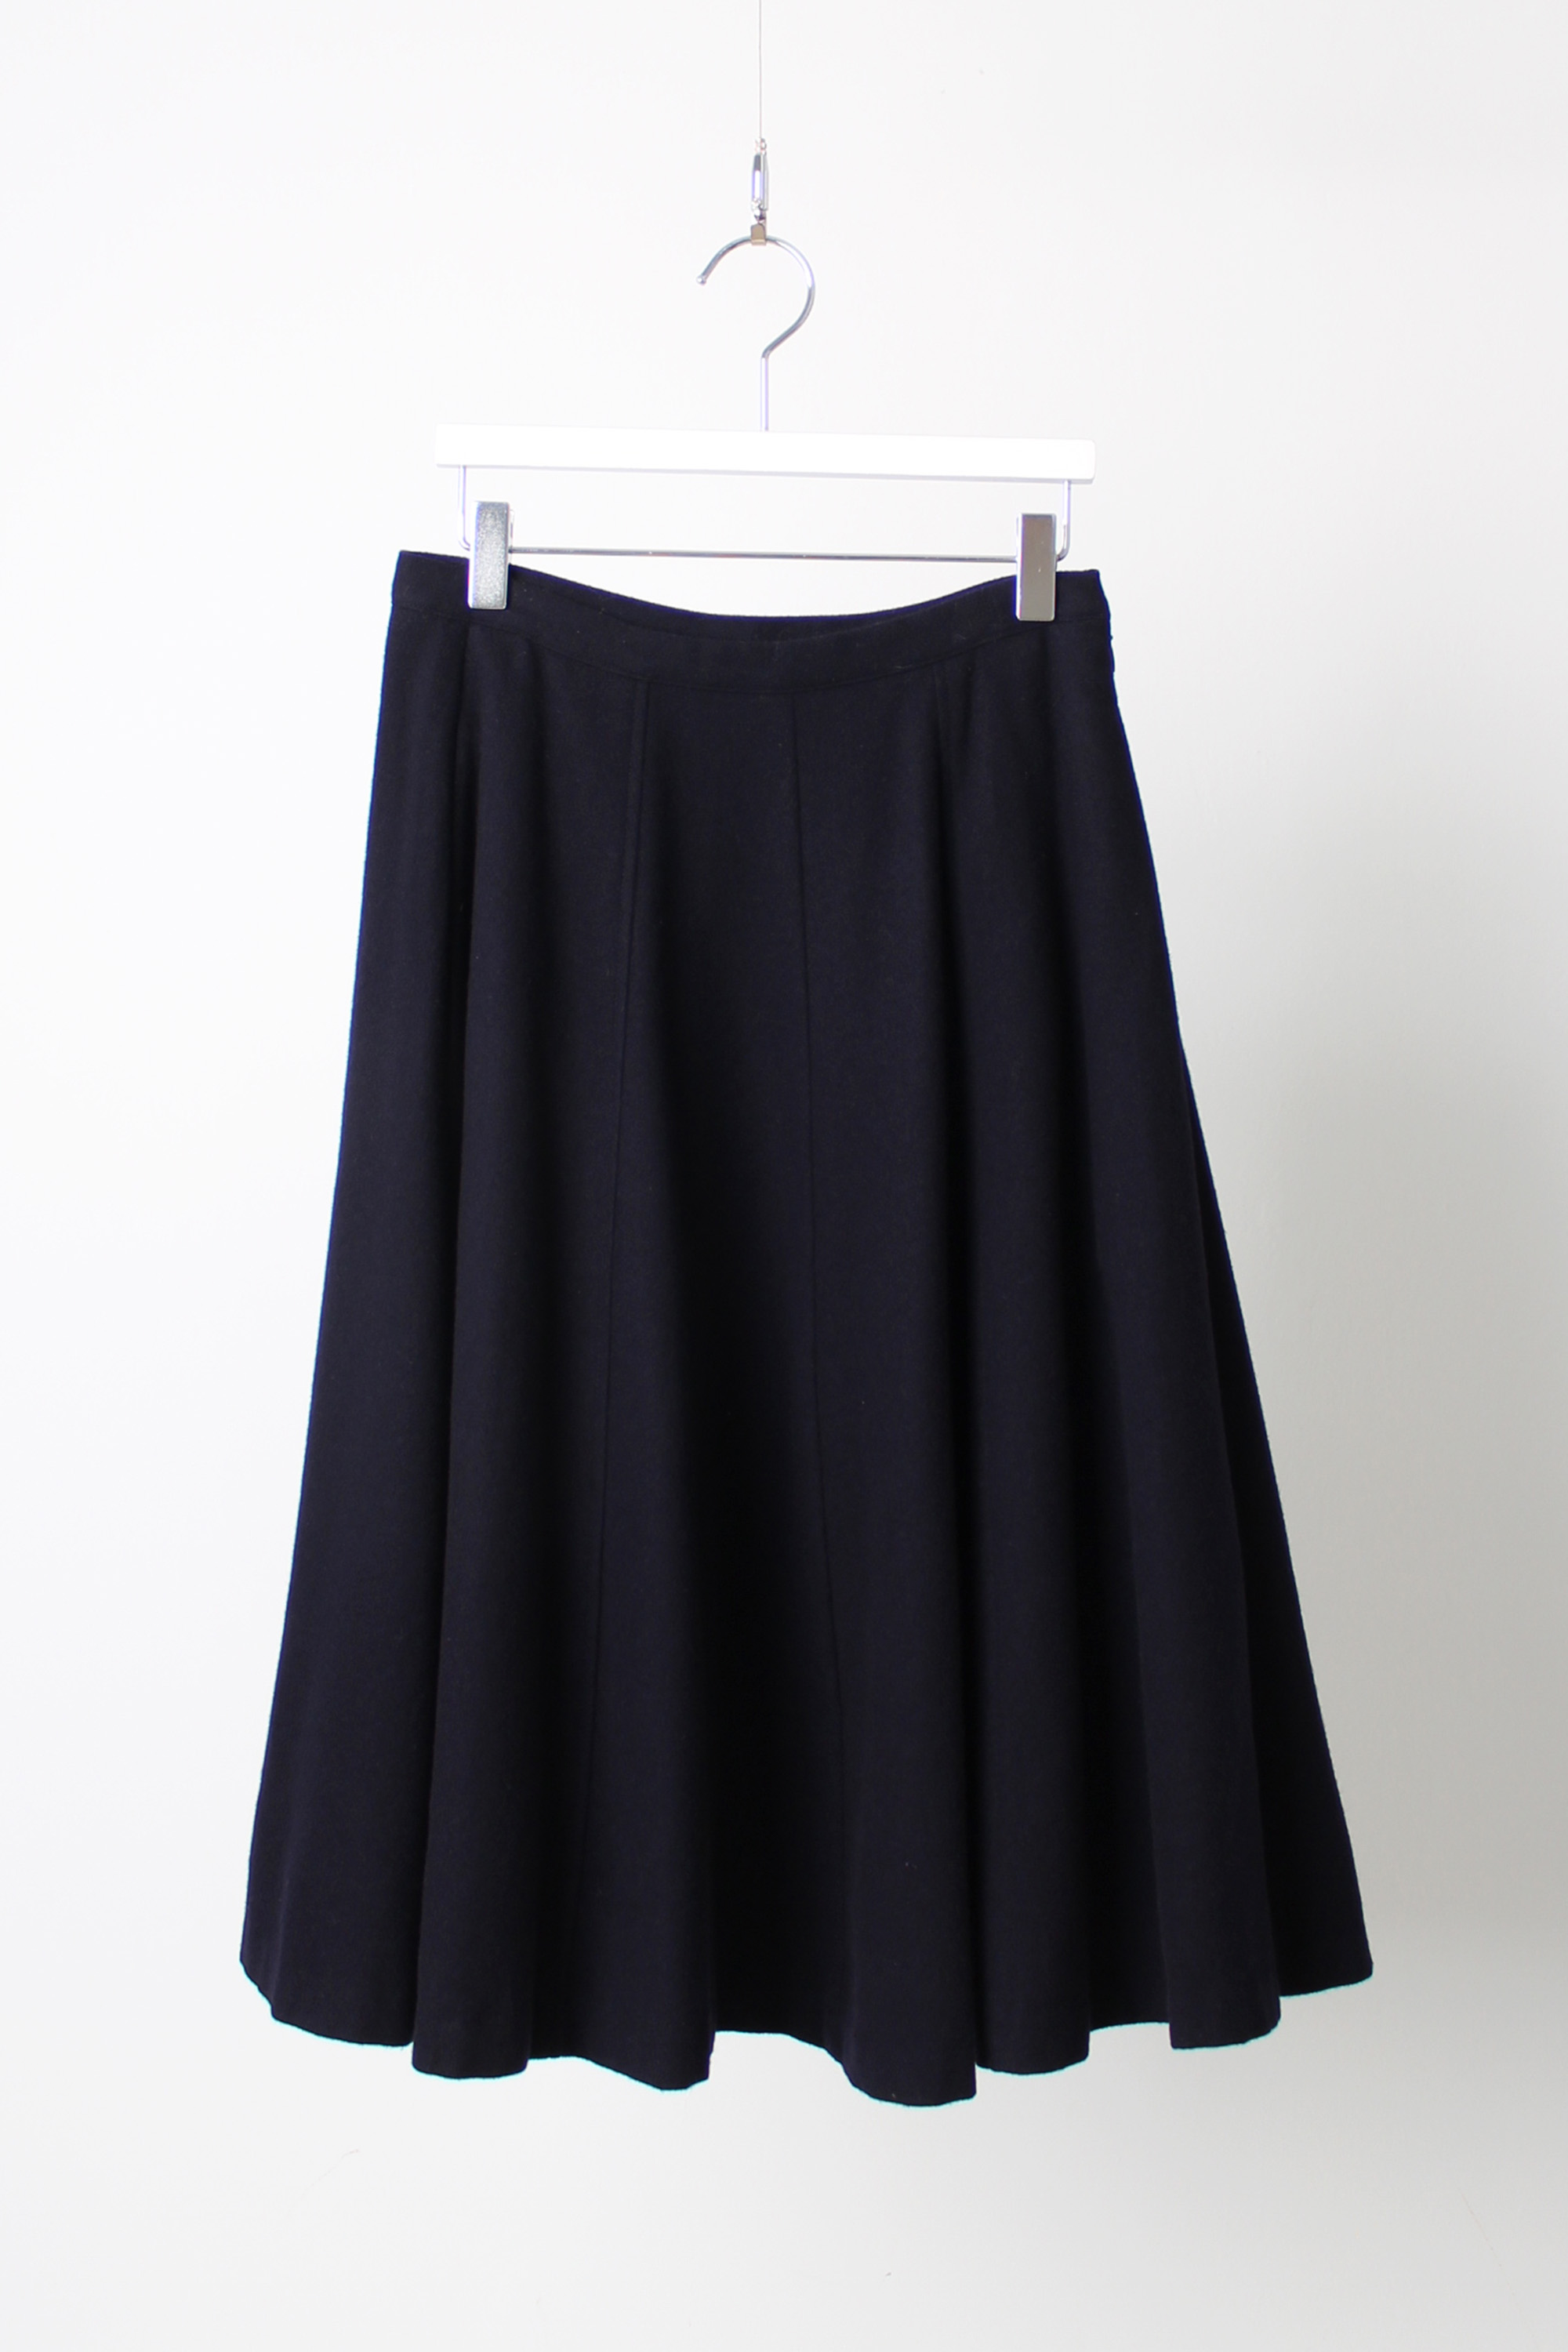 MARGARET HOWELL A line skirt